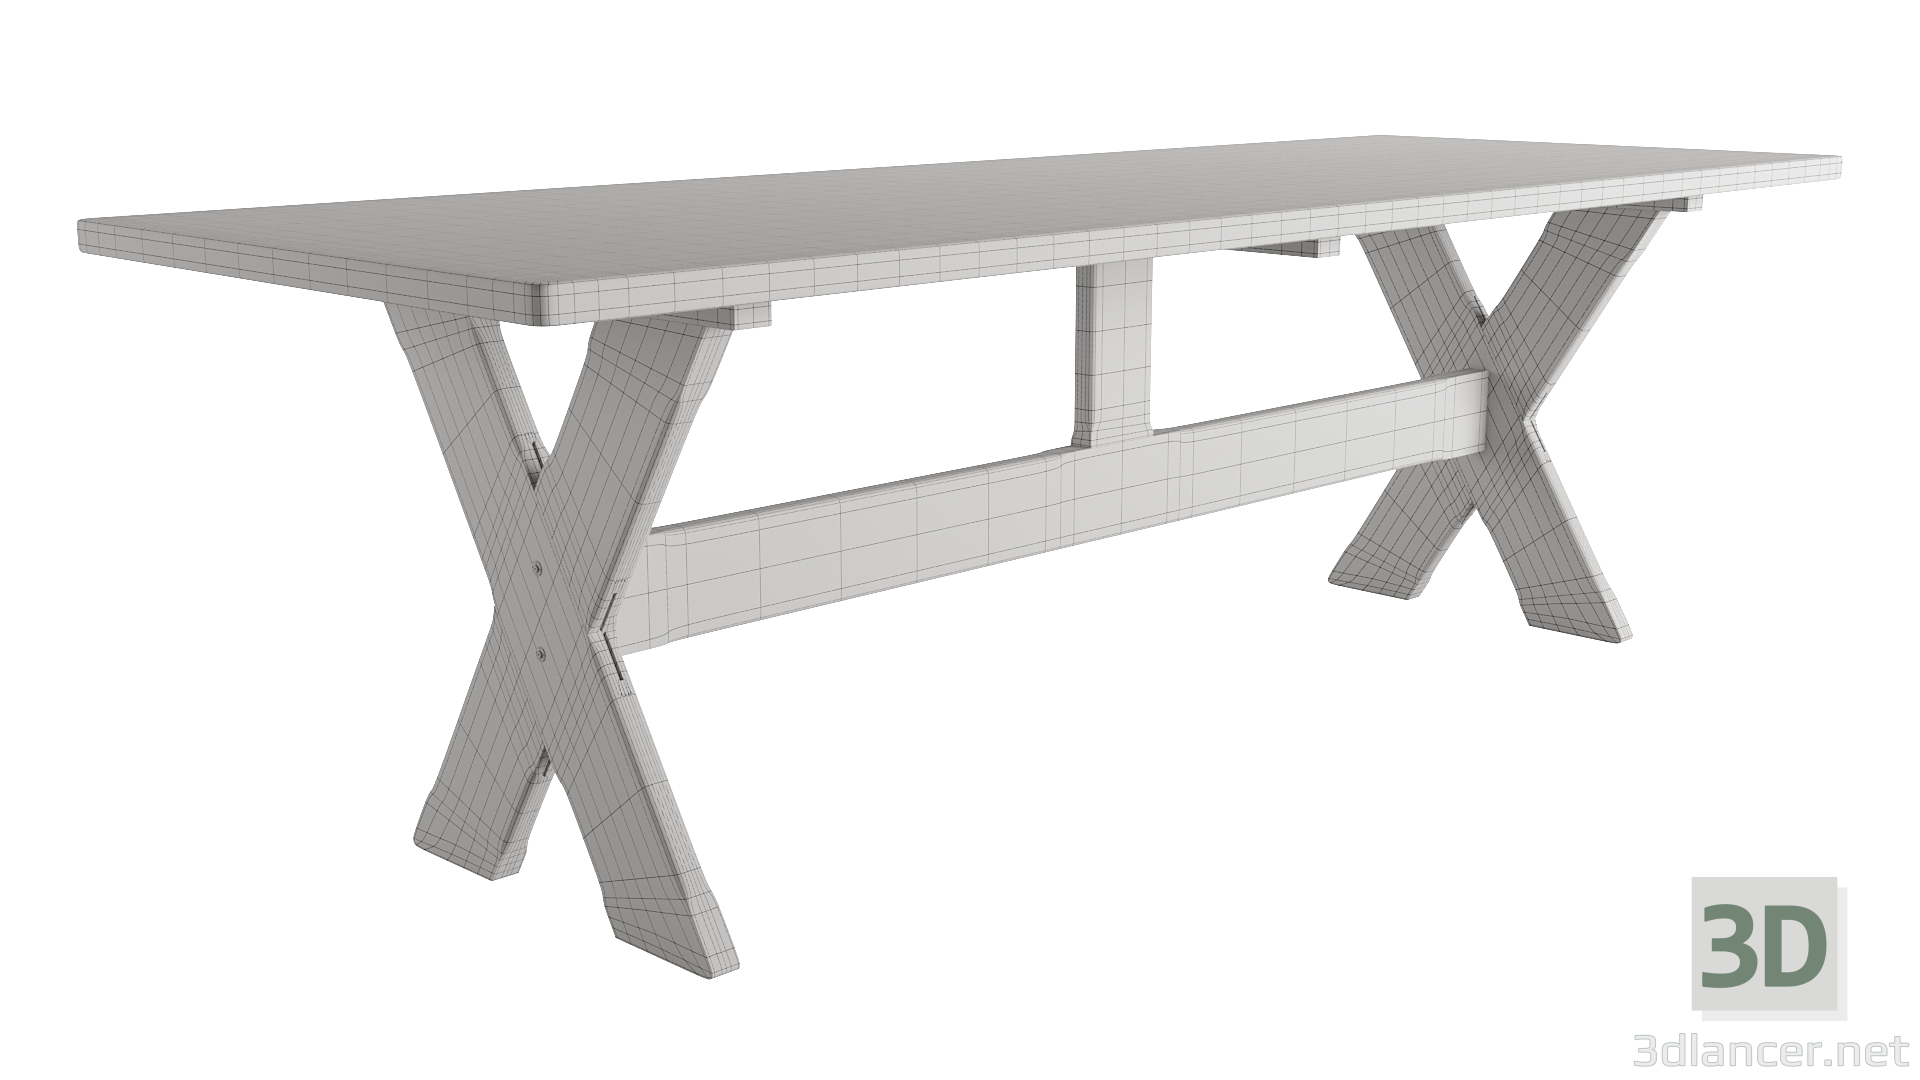 Tisch 3D-Modell kaufen - Rendern